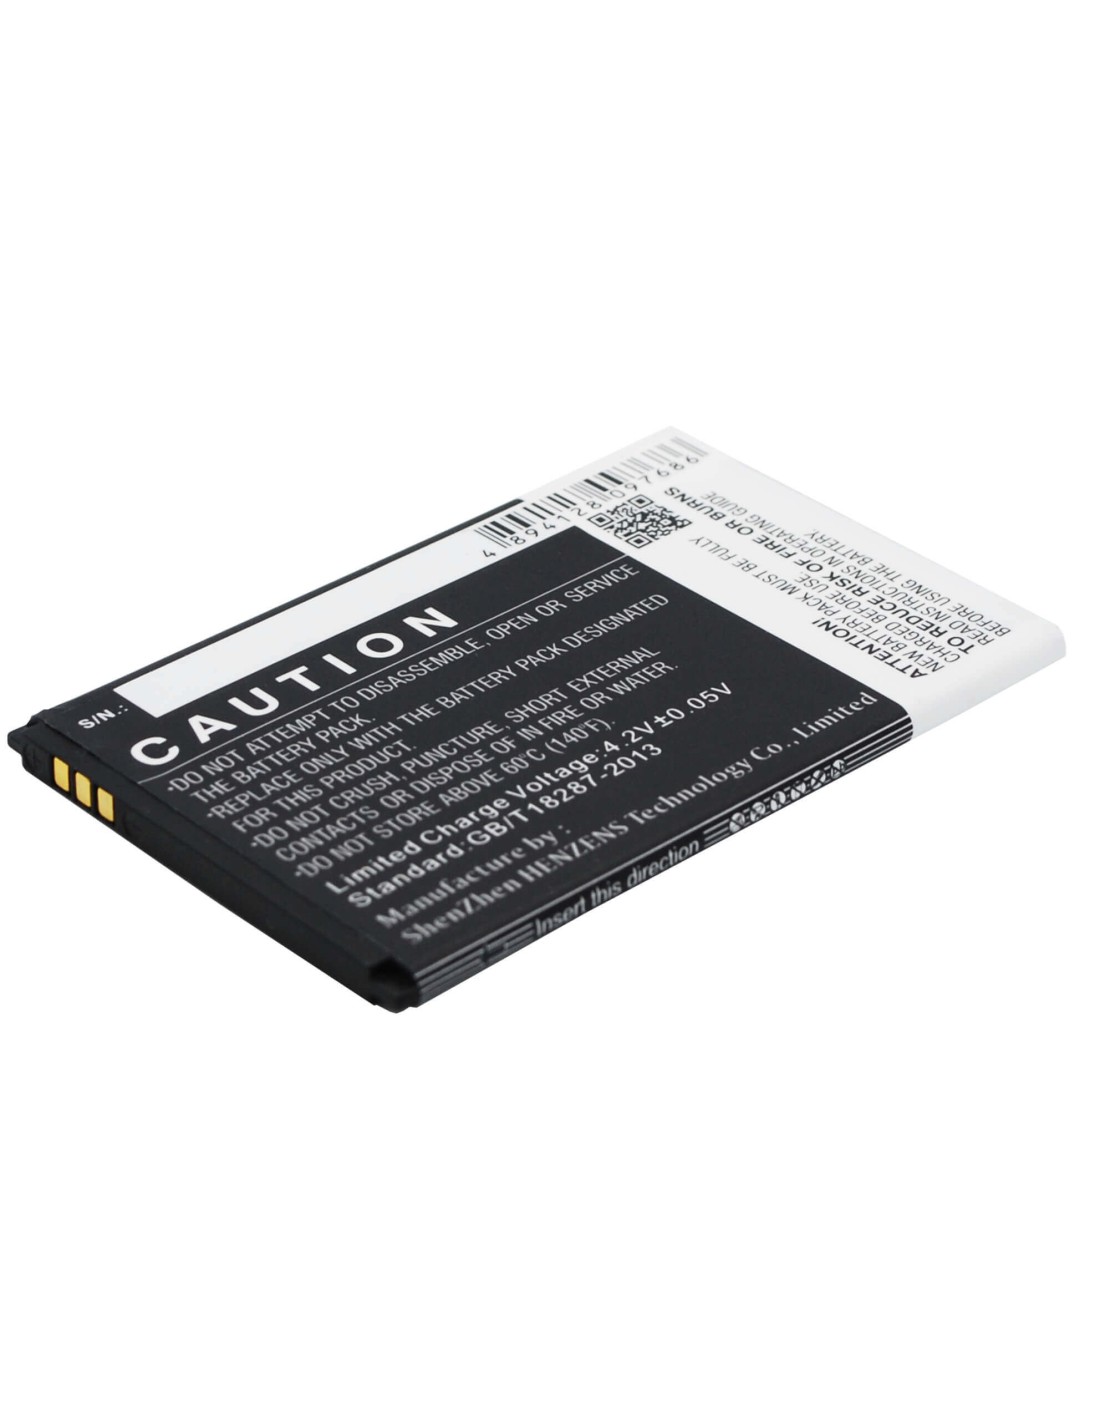 Battery for Prestigio MultiPhone 3400 Duo 3.7V, 1500mAh - 5.55Wh